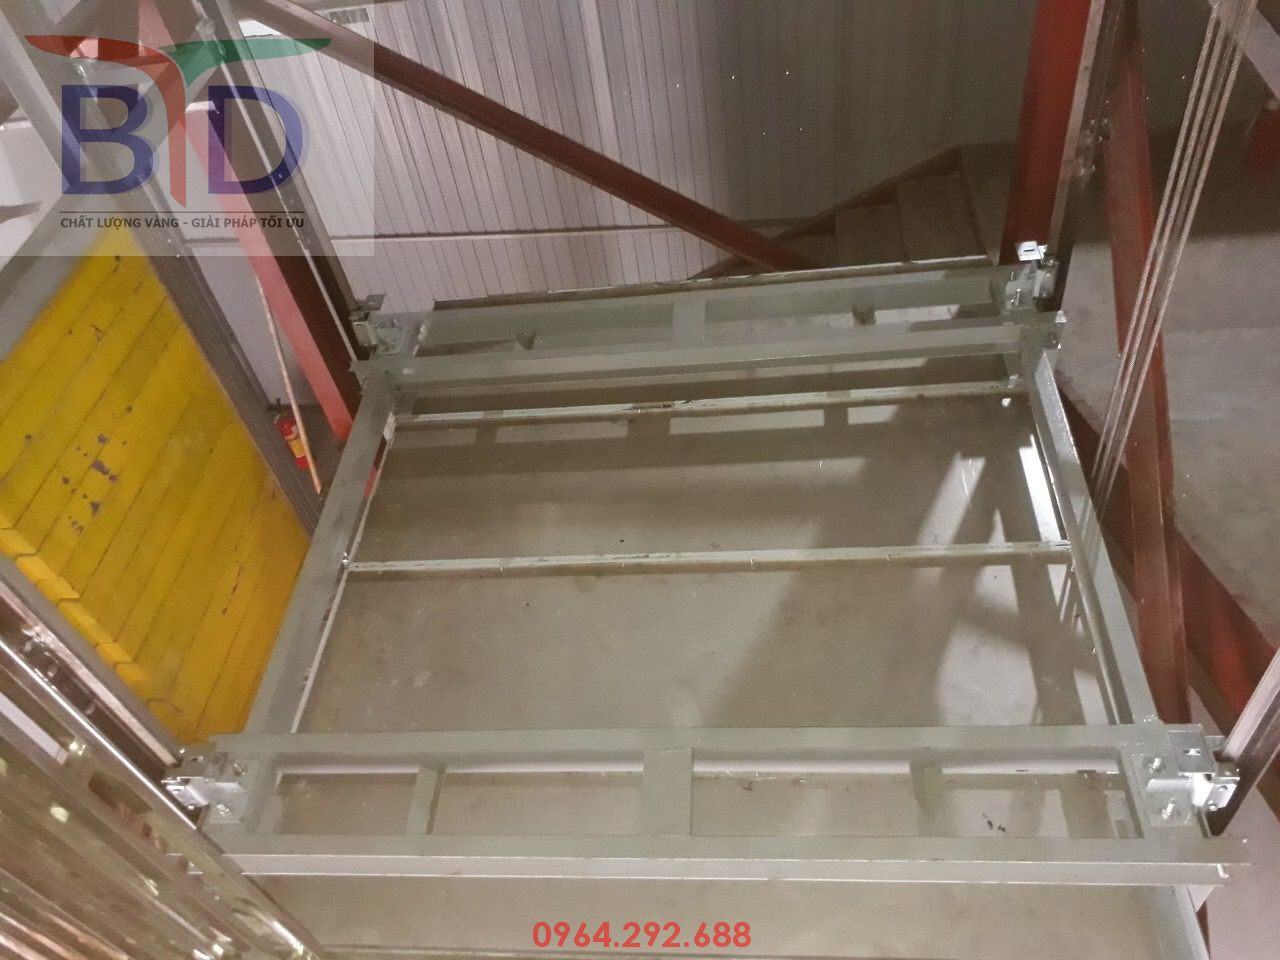 Mặt trên cabin thang máy tải hàng 1000kg- 02 stops tại khi xưởng may Bắc Giang LNG